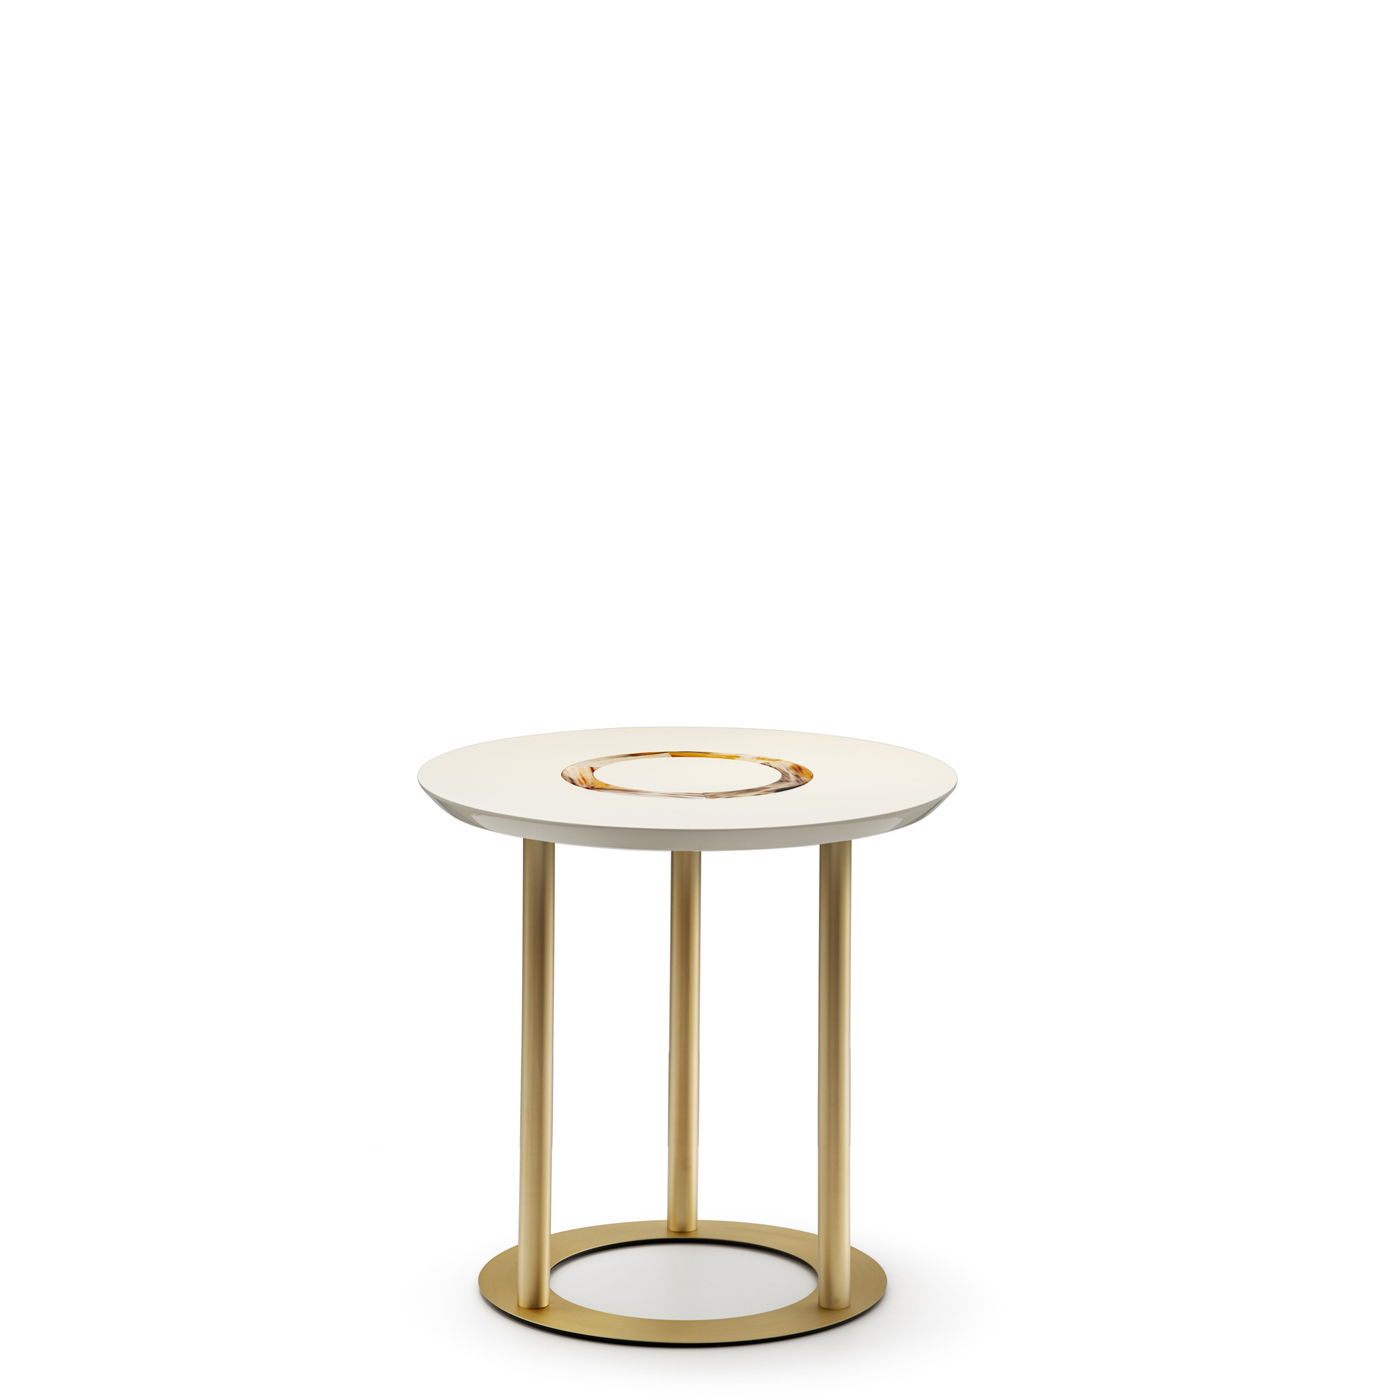 Tavoli e consolle - Saturno tavolino in legno laccato avorio - Arcahorn